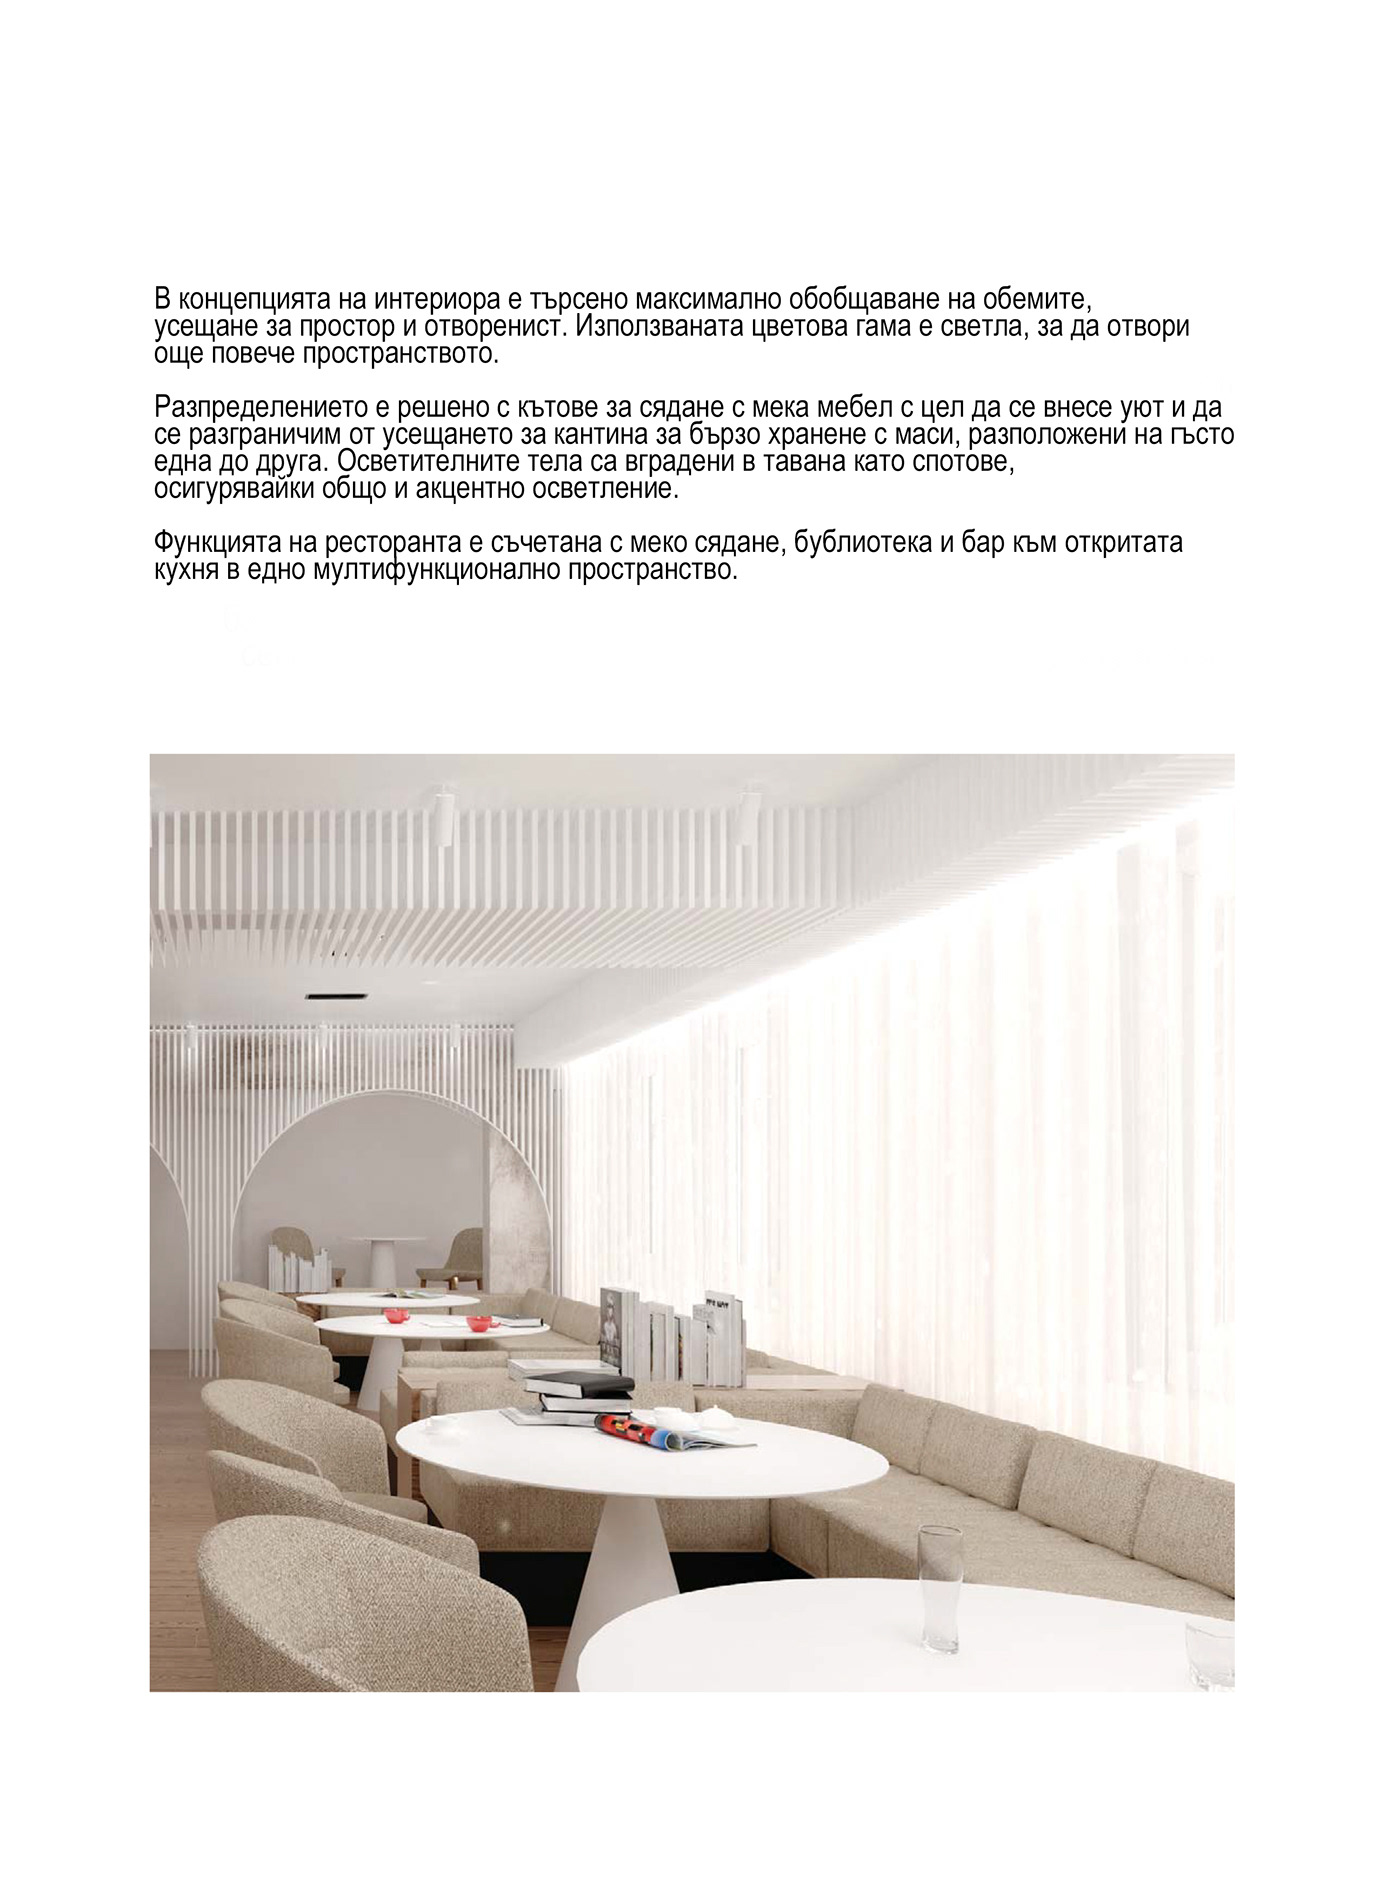 sova Interior design architecture hotel ruse bulgaria Lobby reception